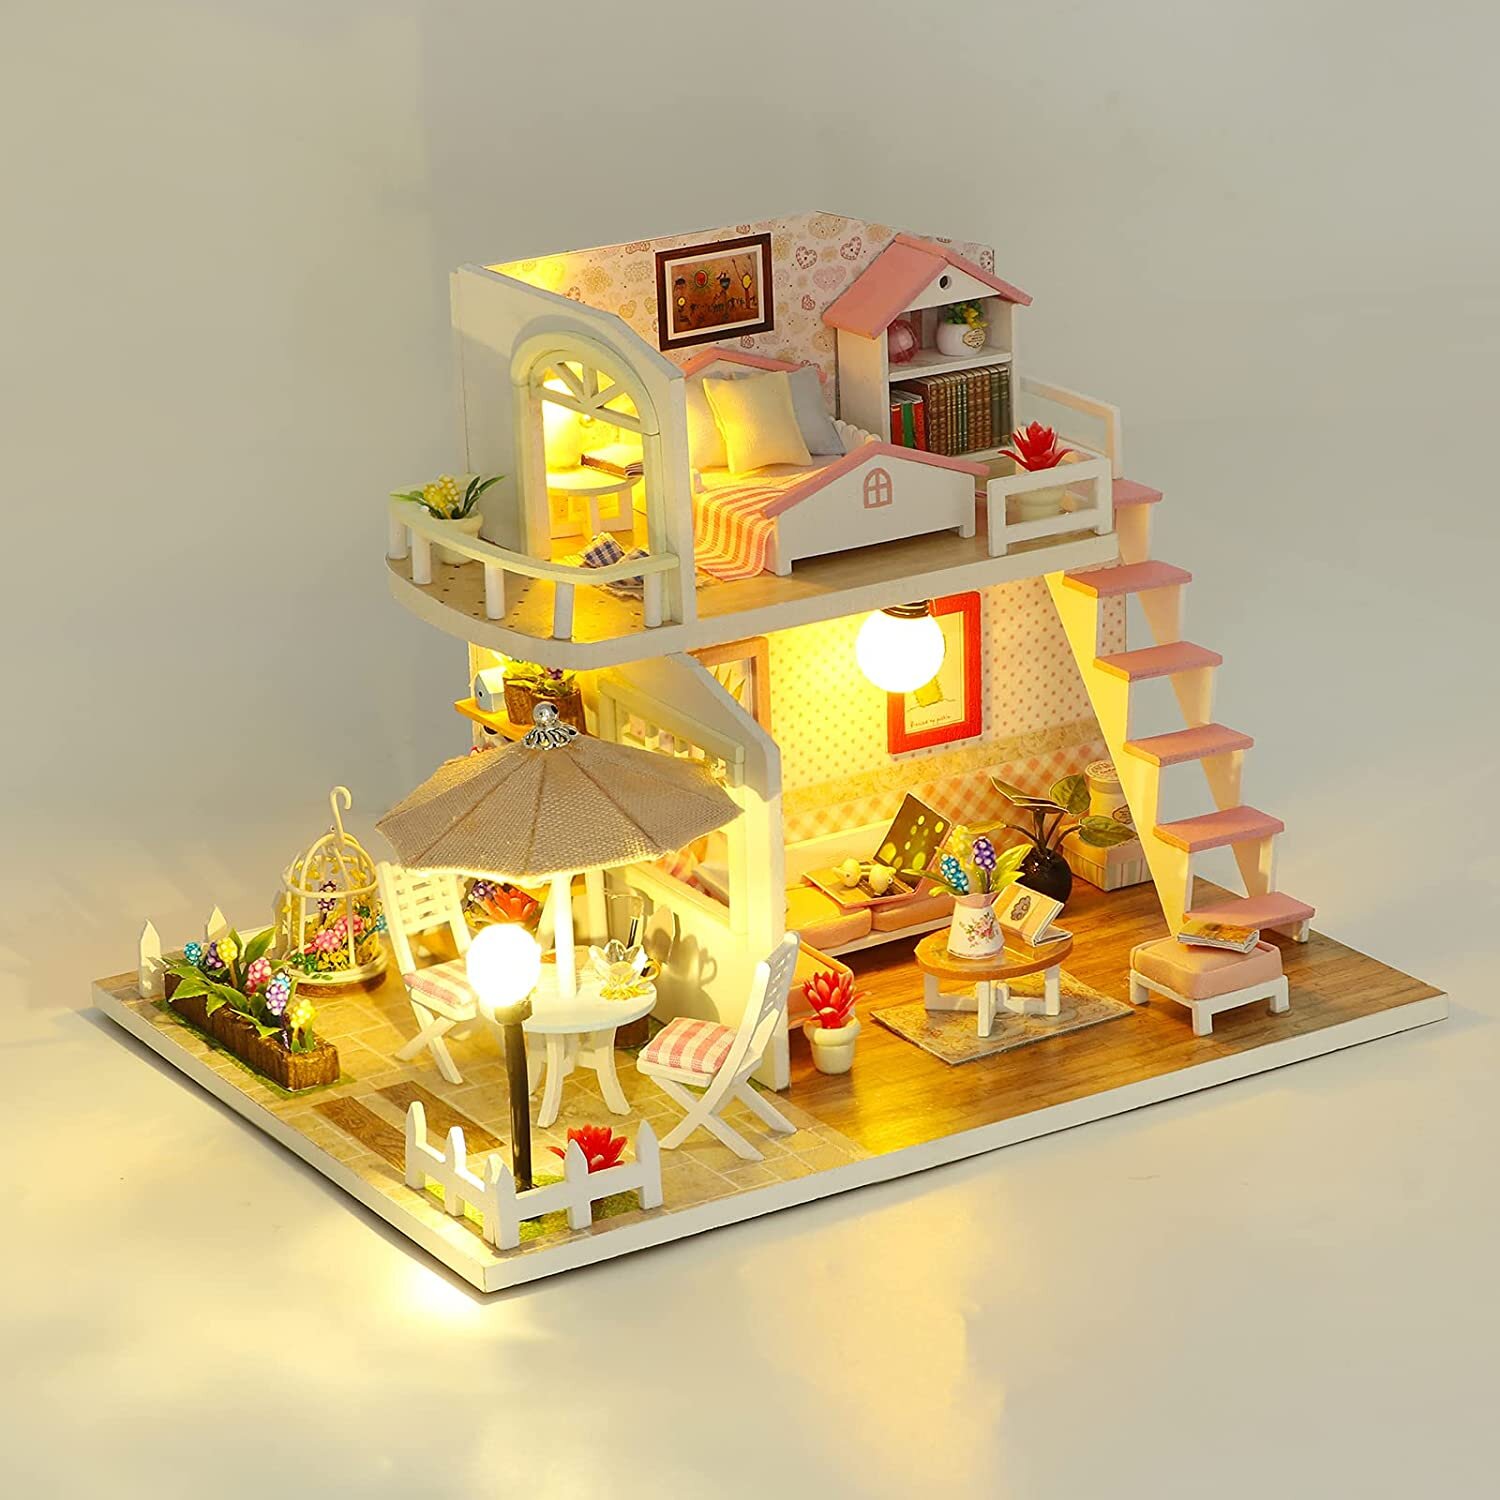 1/24 À faire soi-même Miniature maison de poupée avec meubles Kit amovible coloré en bois 